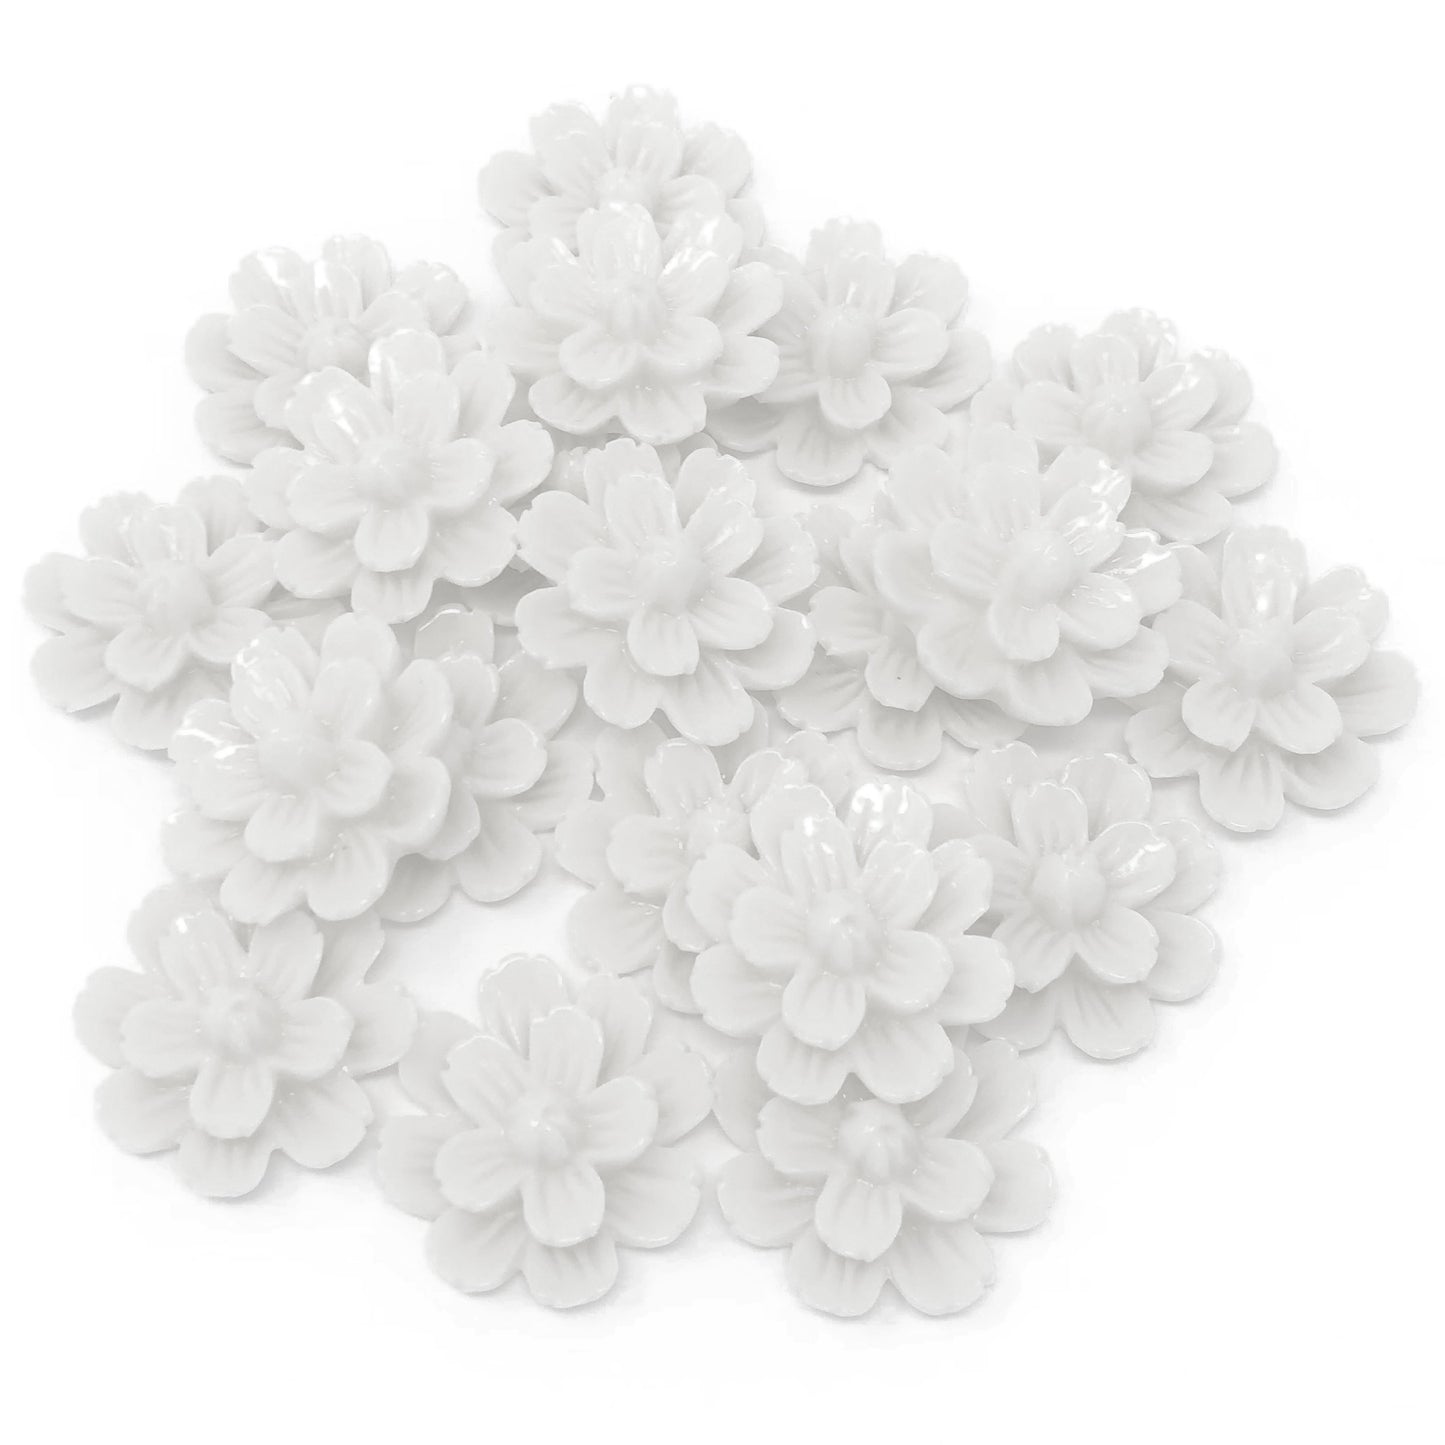 White 20mm Resin Flower Flatbacks - Pack of 20